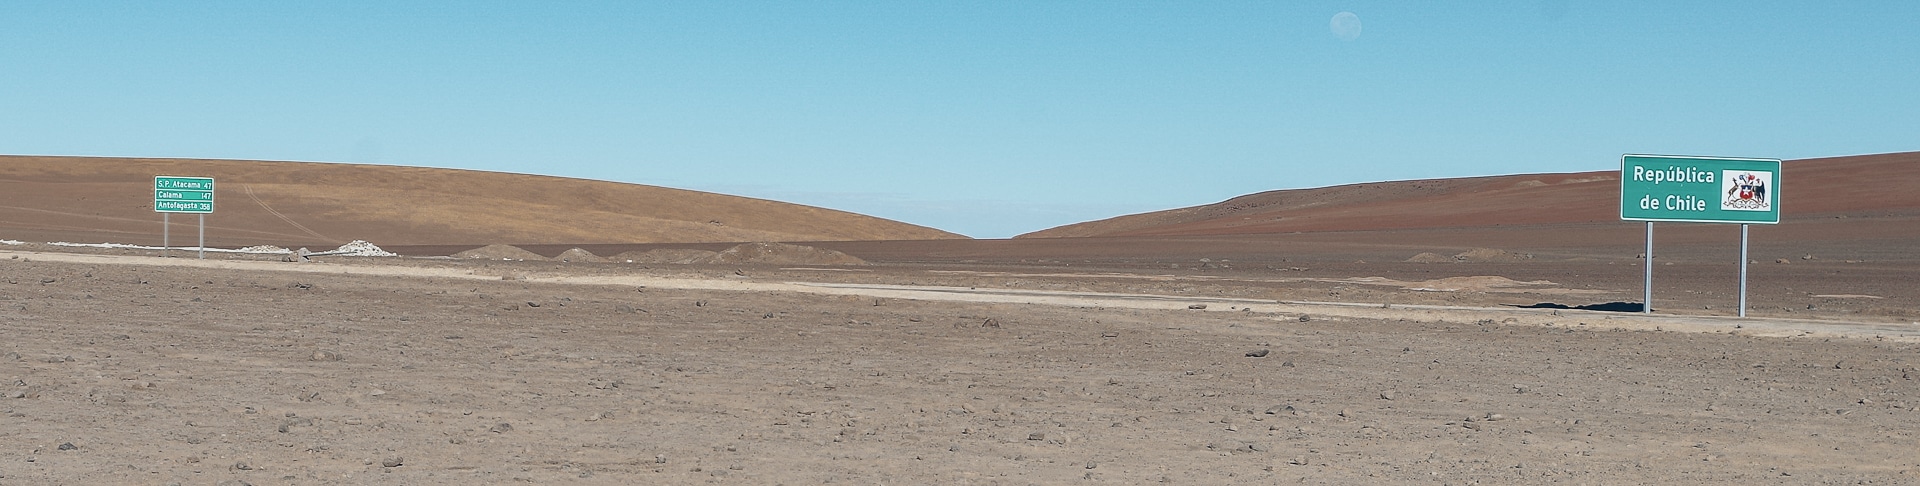 passage frontière Chili au milieu du désert d'Atacama